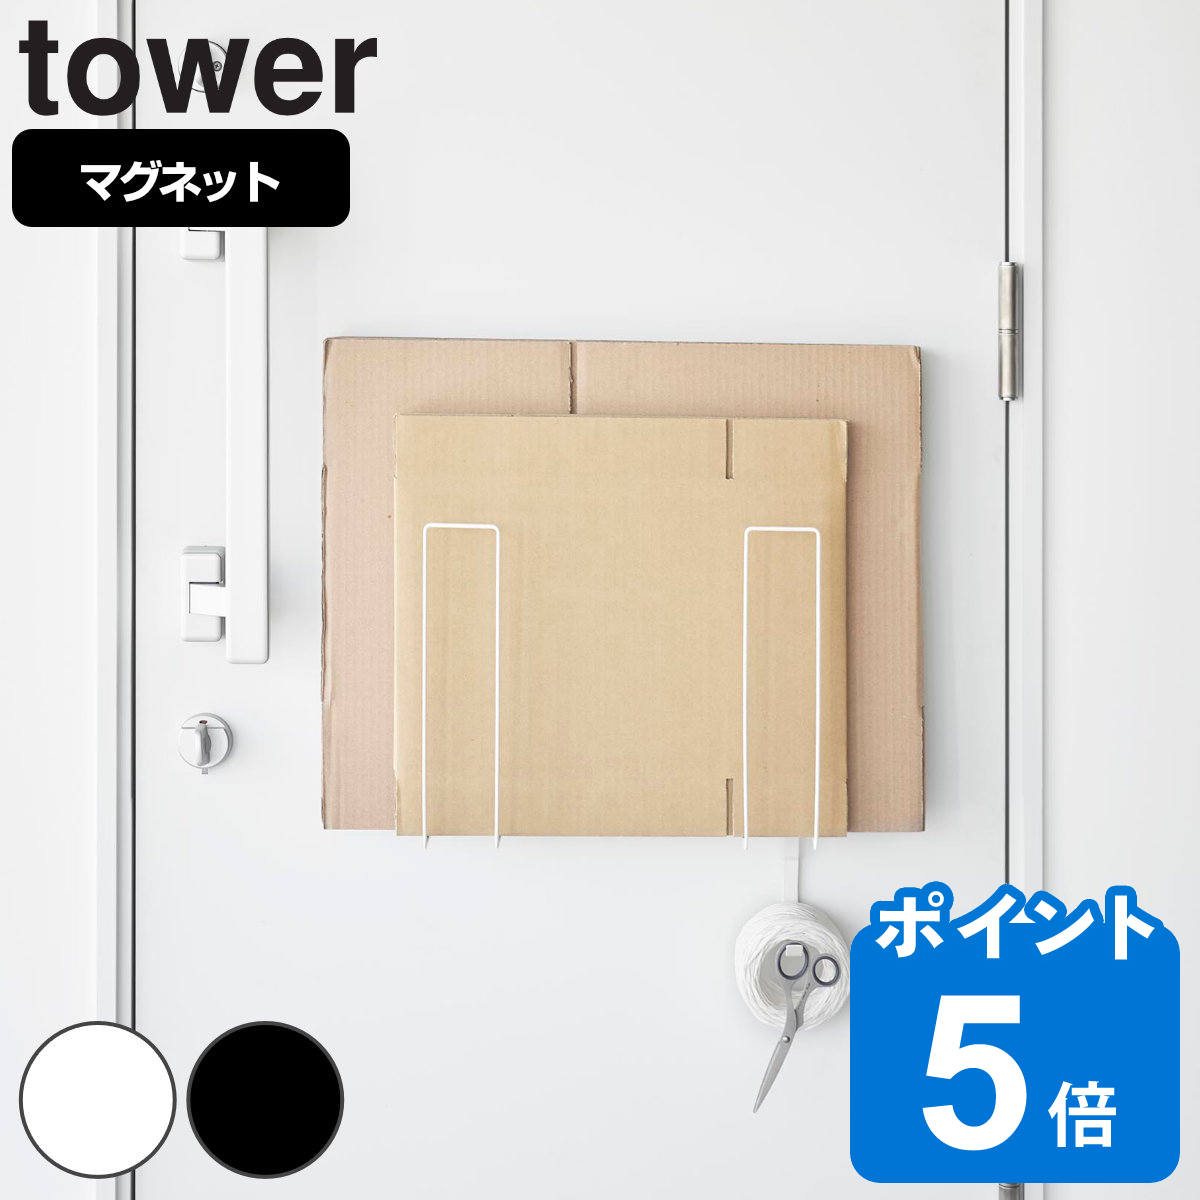 山崎実業 tower マグネットダンボールストッカー タワー